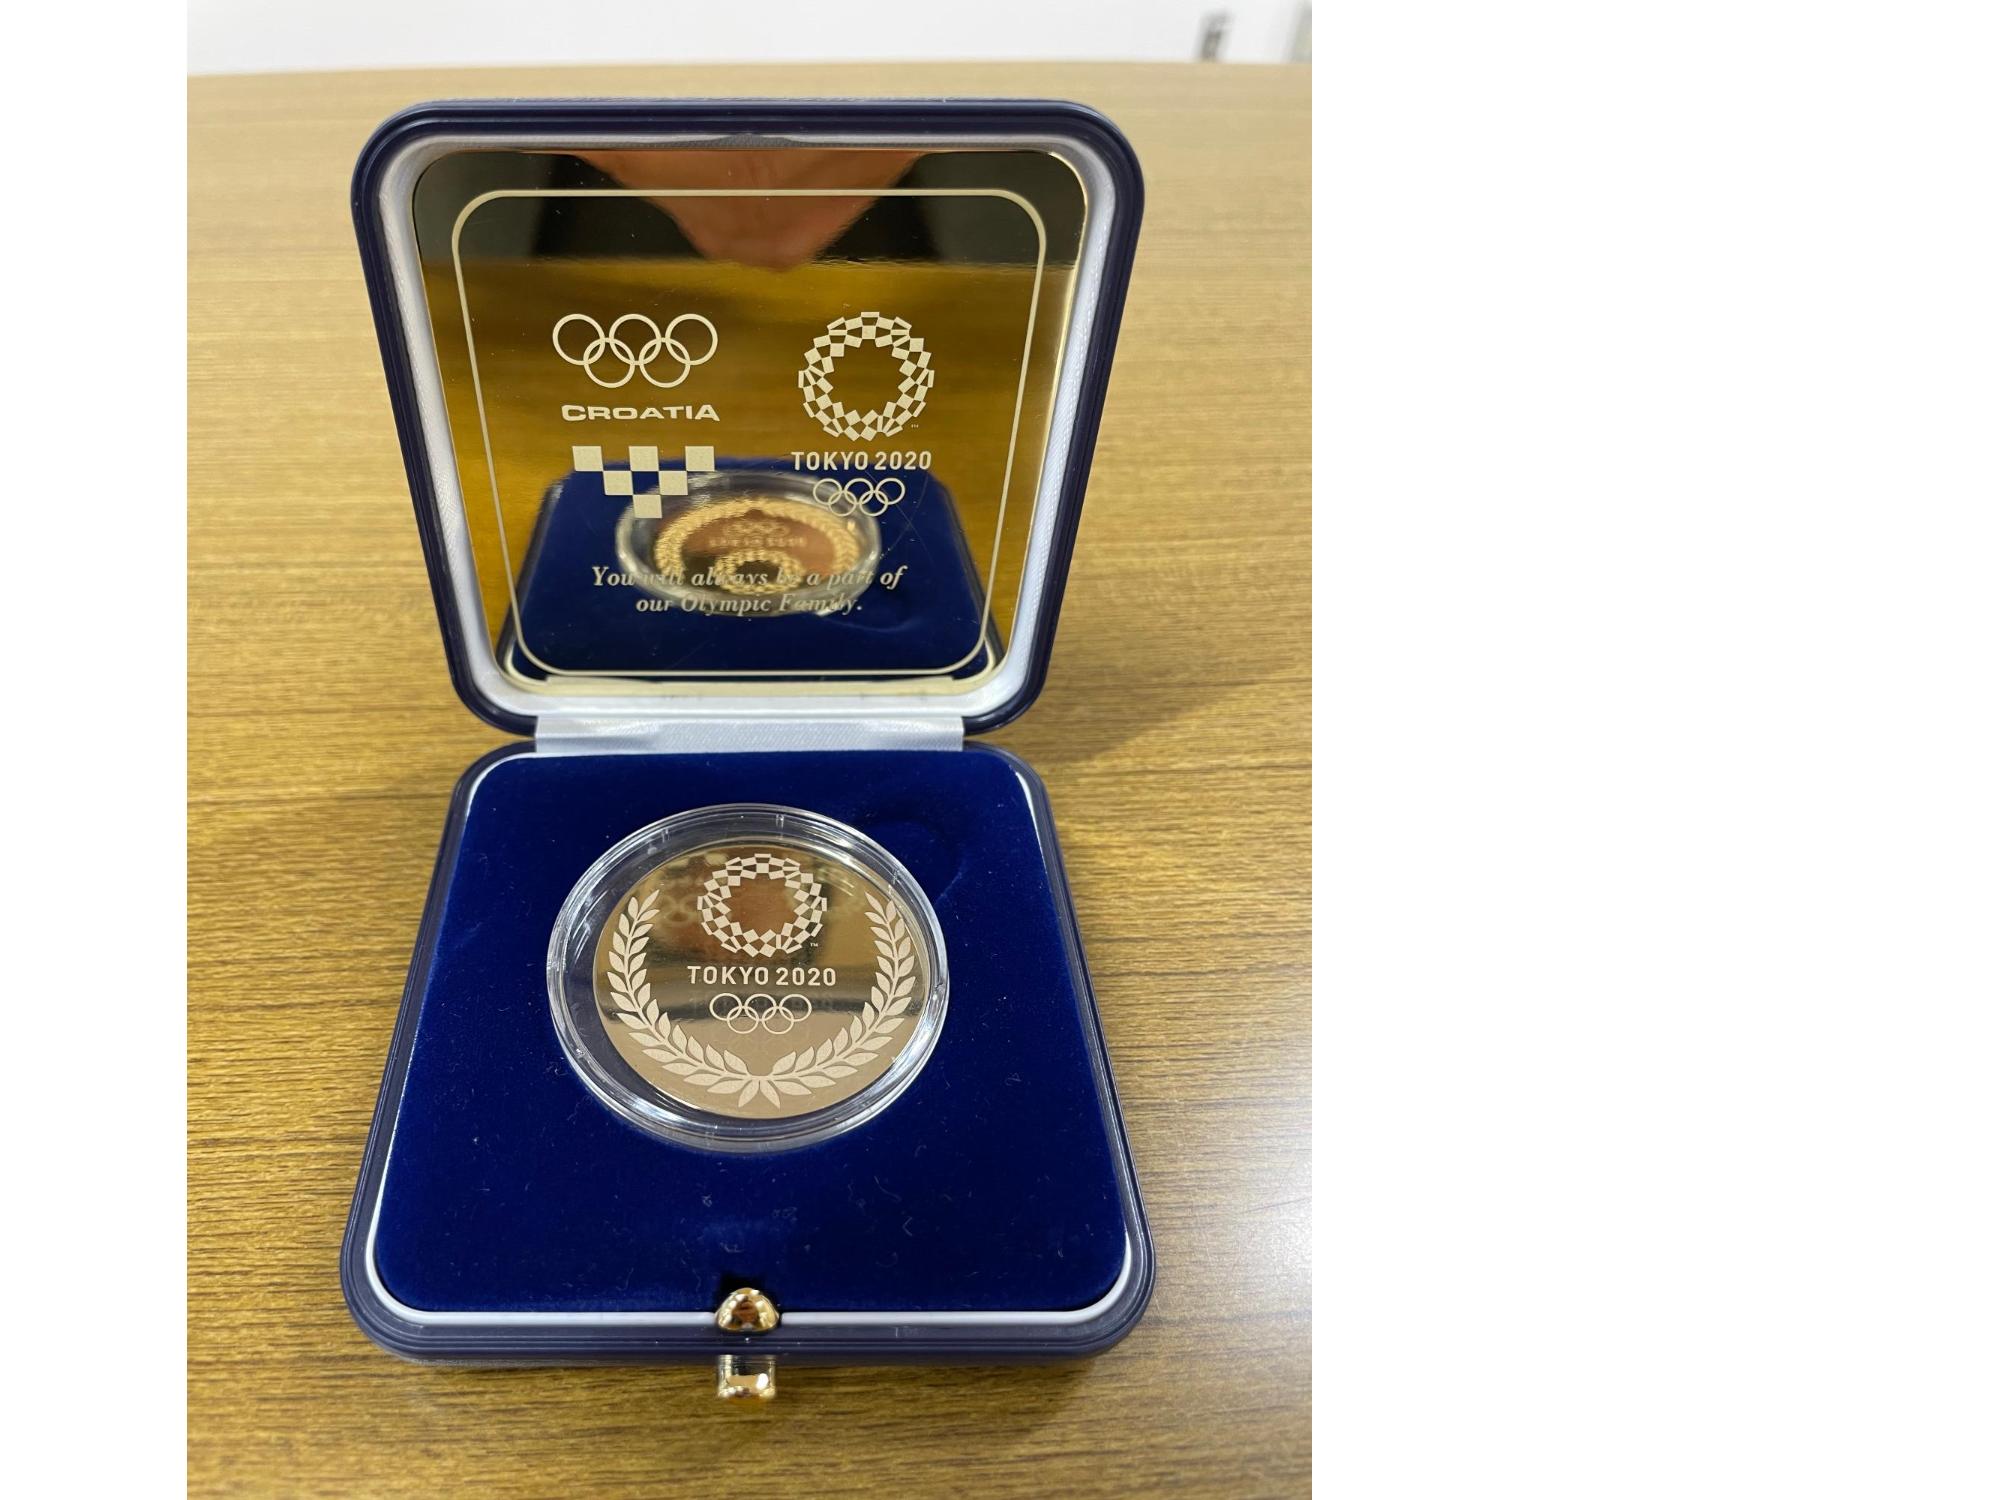 クロアチア共和国オリンピック委員会からのメダル